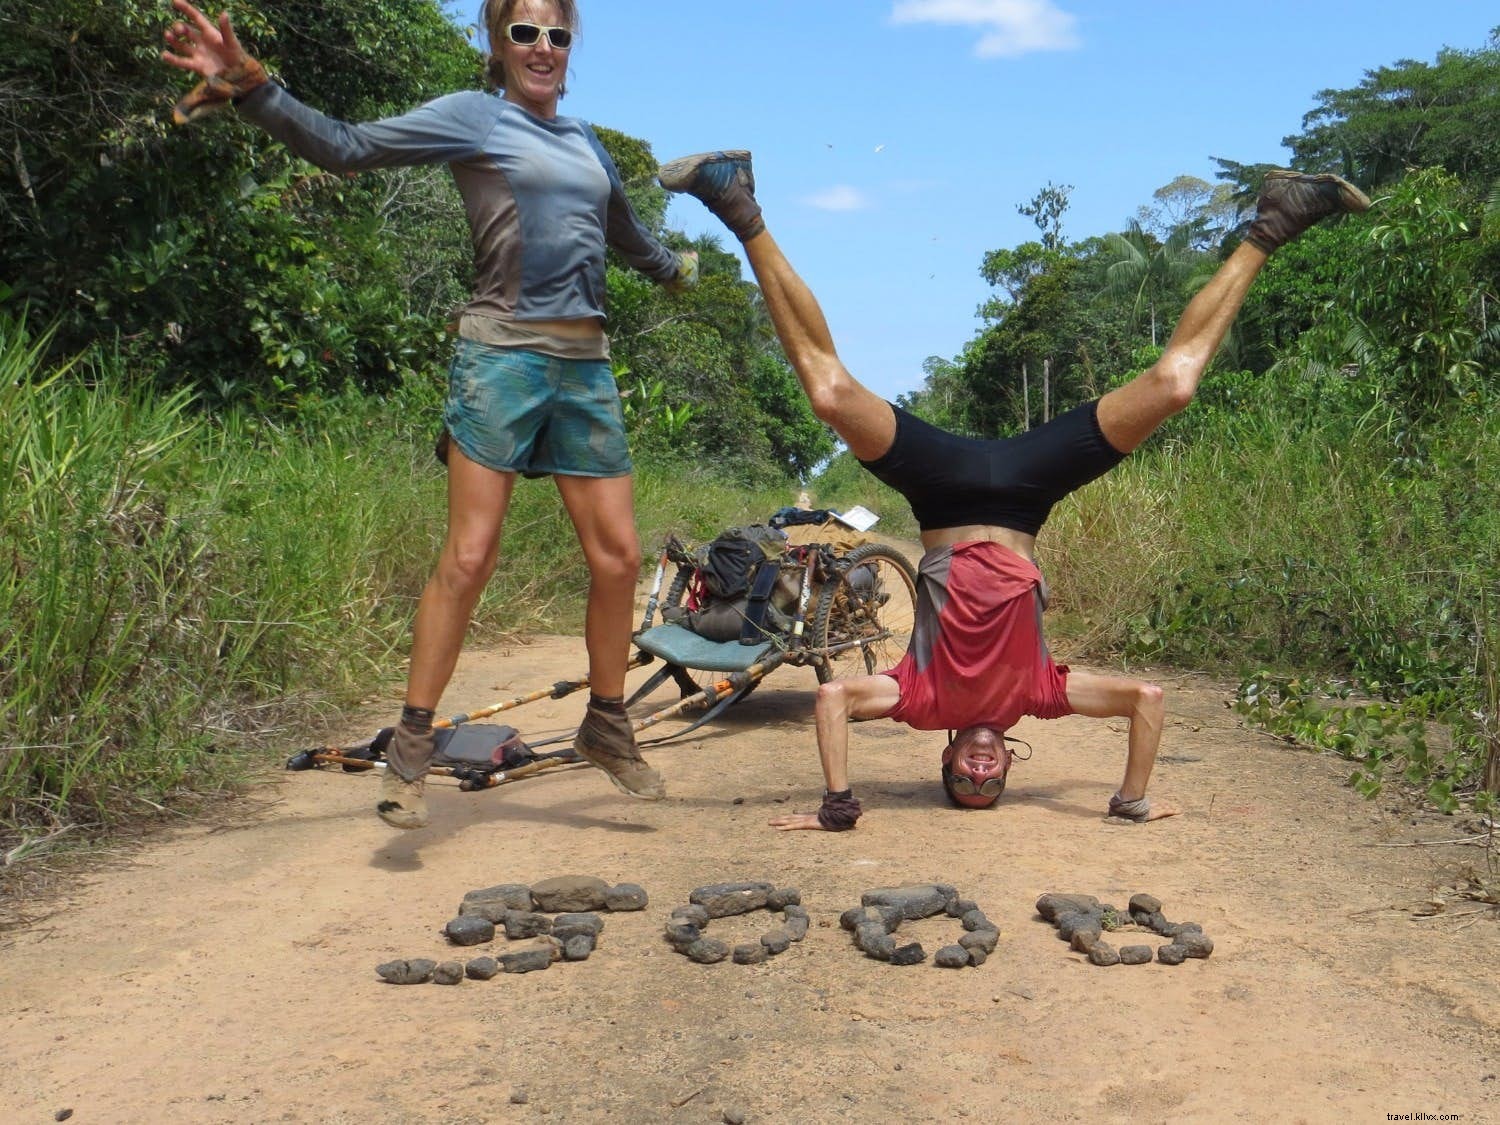  A existência mais bonita e simples :um casal compartilha sua experiência de correr 5.000 milhas pela América do Sul 